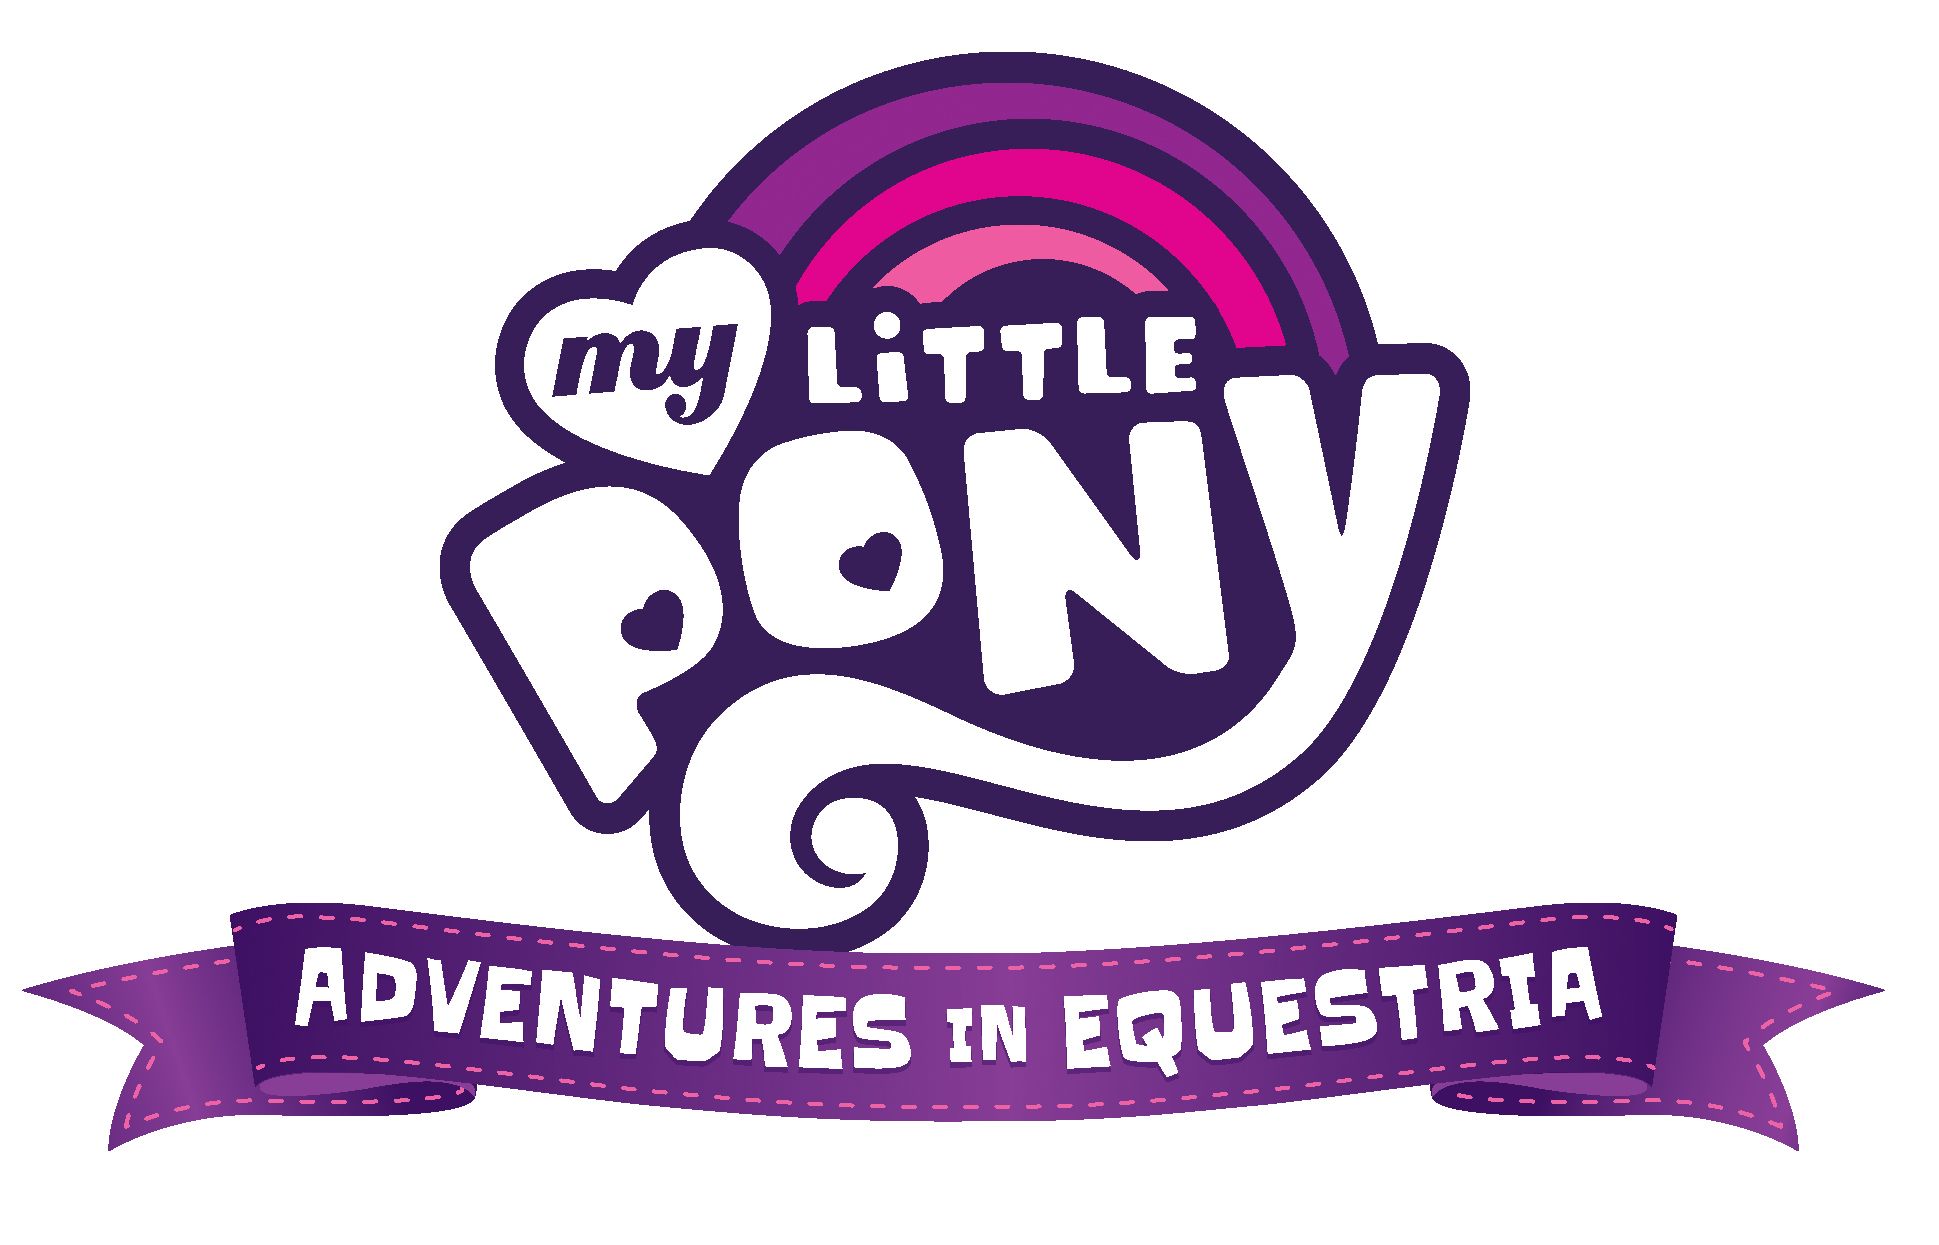 https://renegadegamestudios.com/my-little-pony-adventures-in-equestria-deck-building-game/